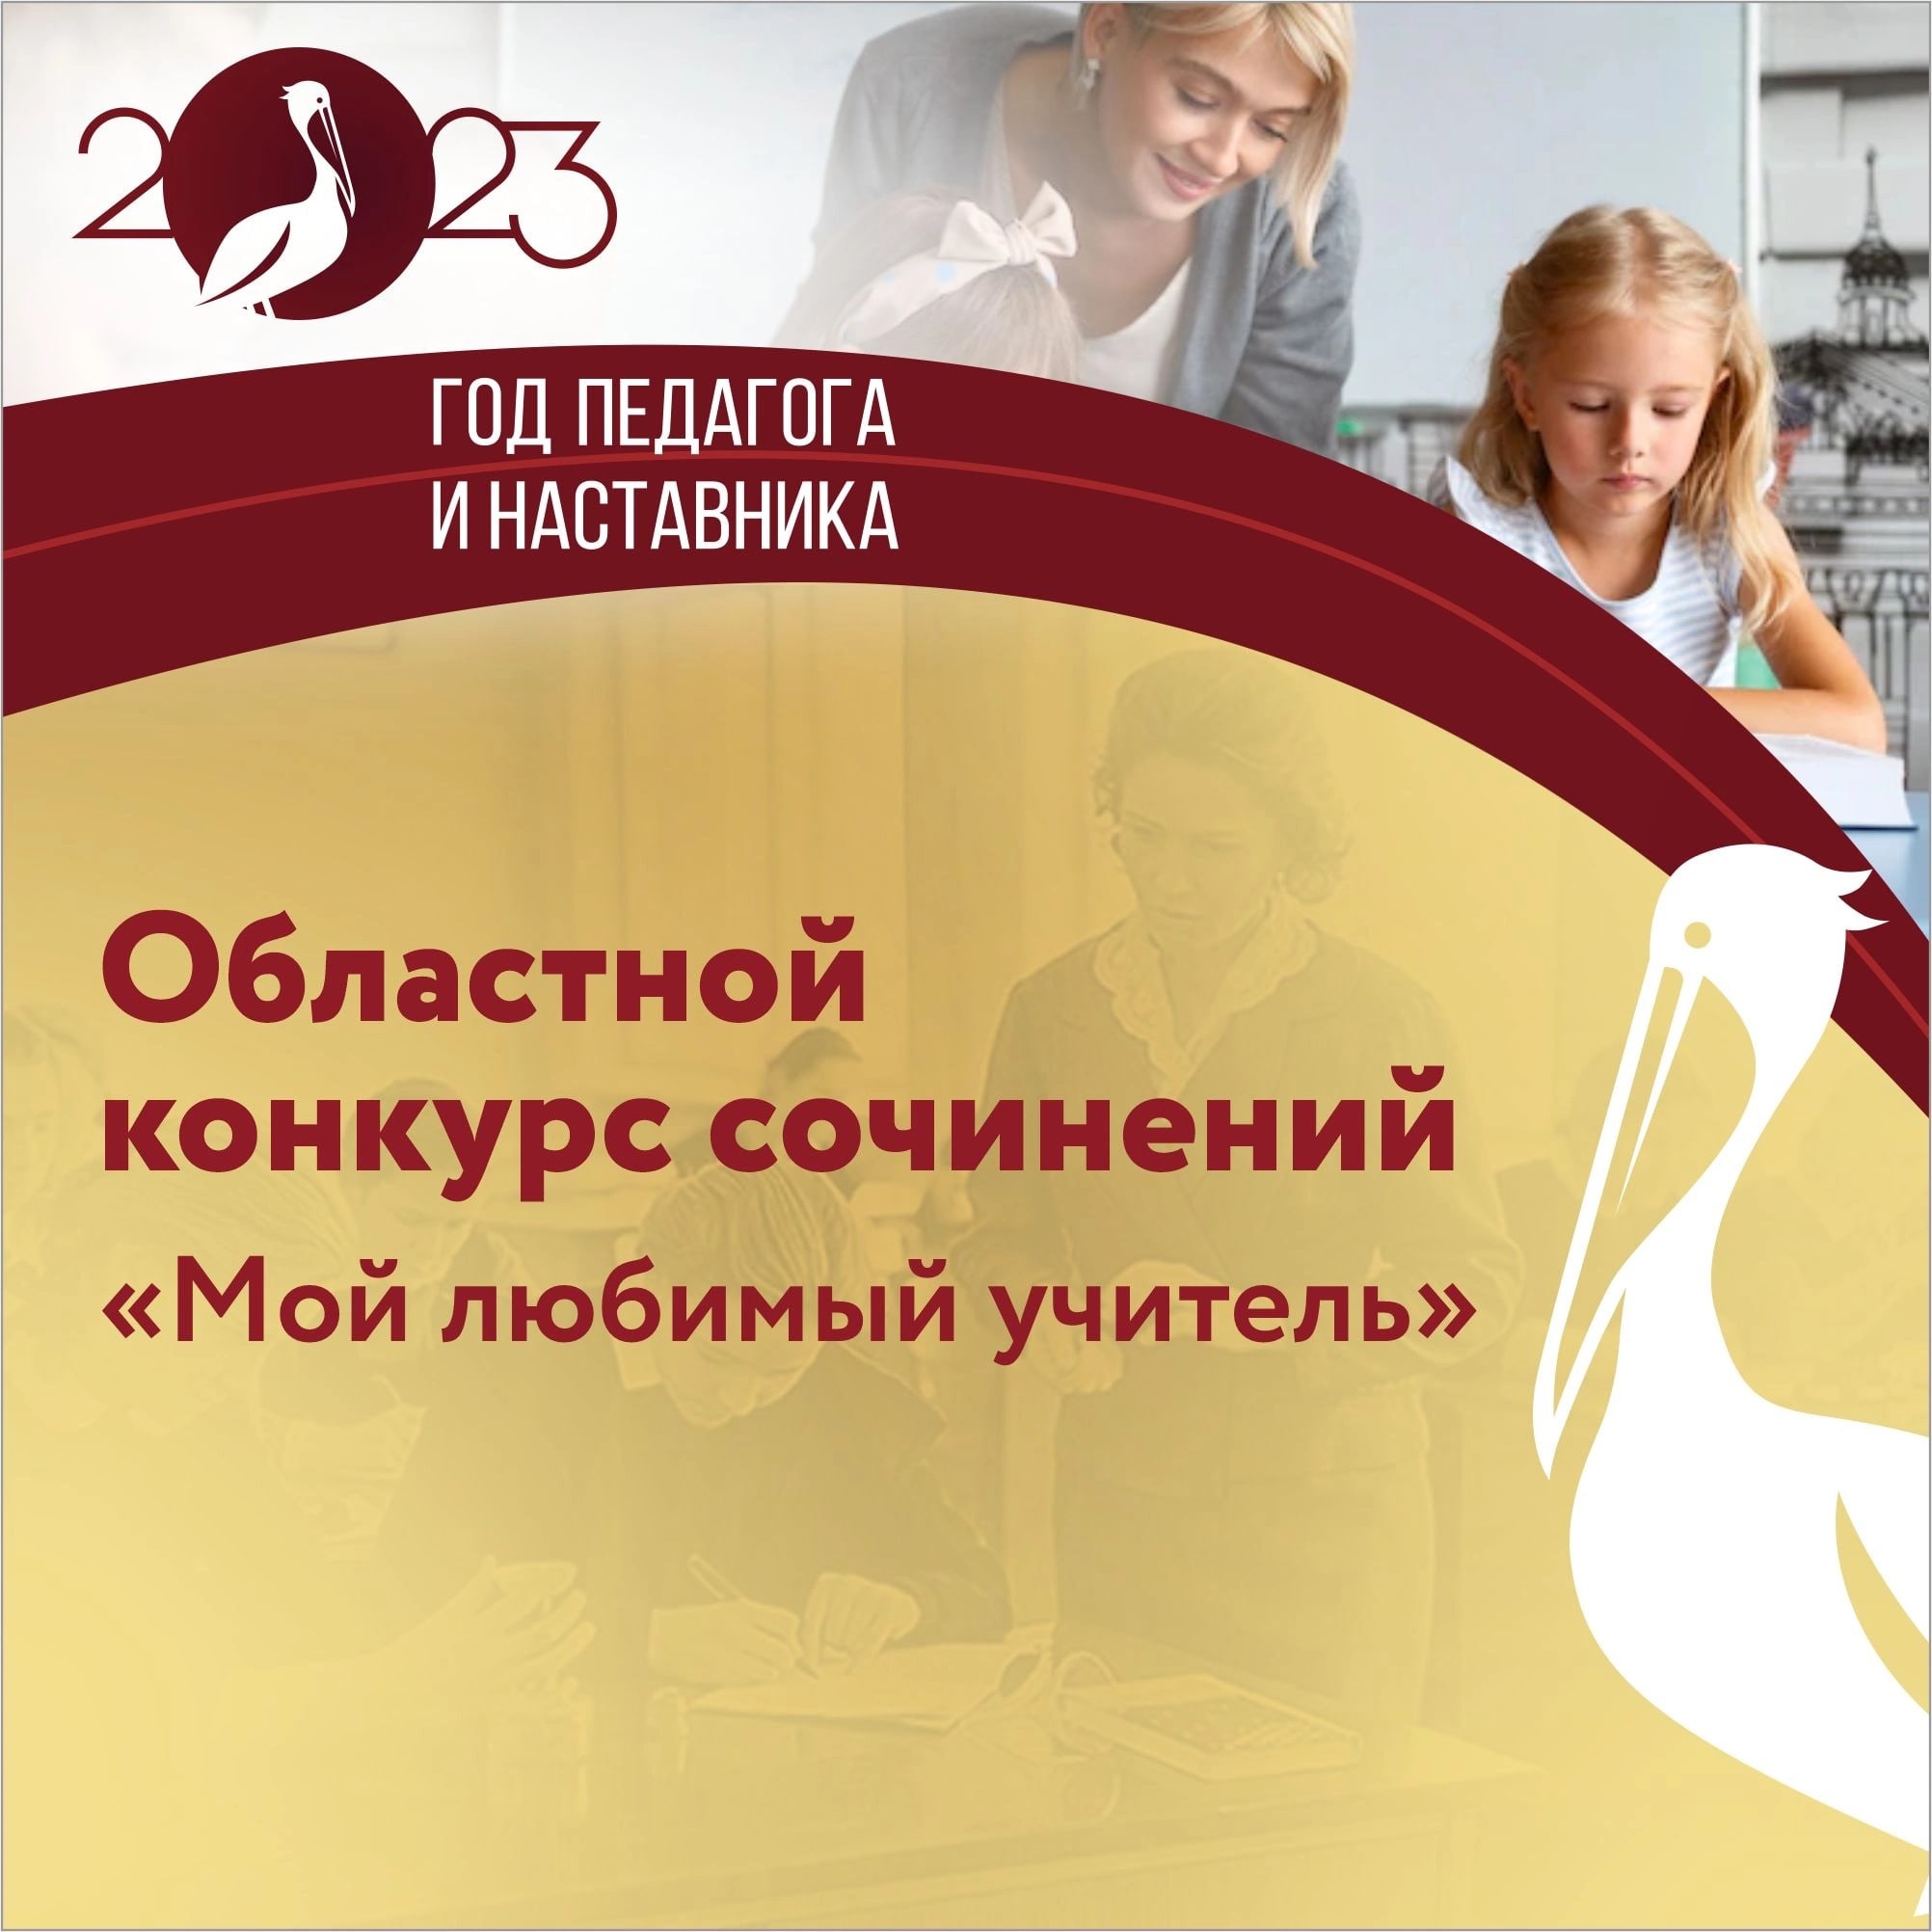 Увлекательные мероприятия на английском языке для детей и взрослых в Москве и Московской области